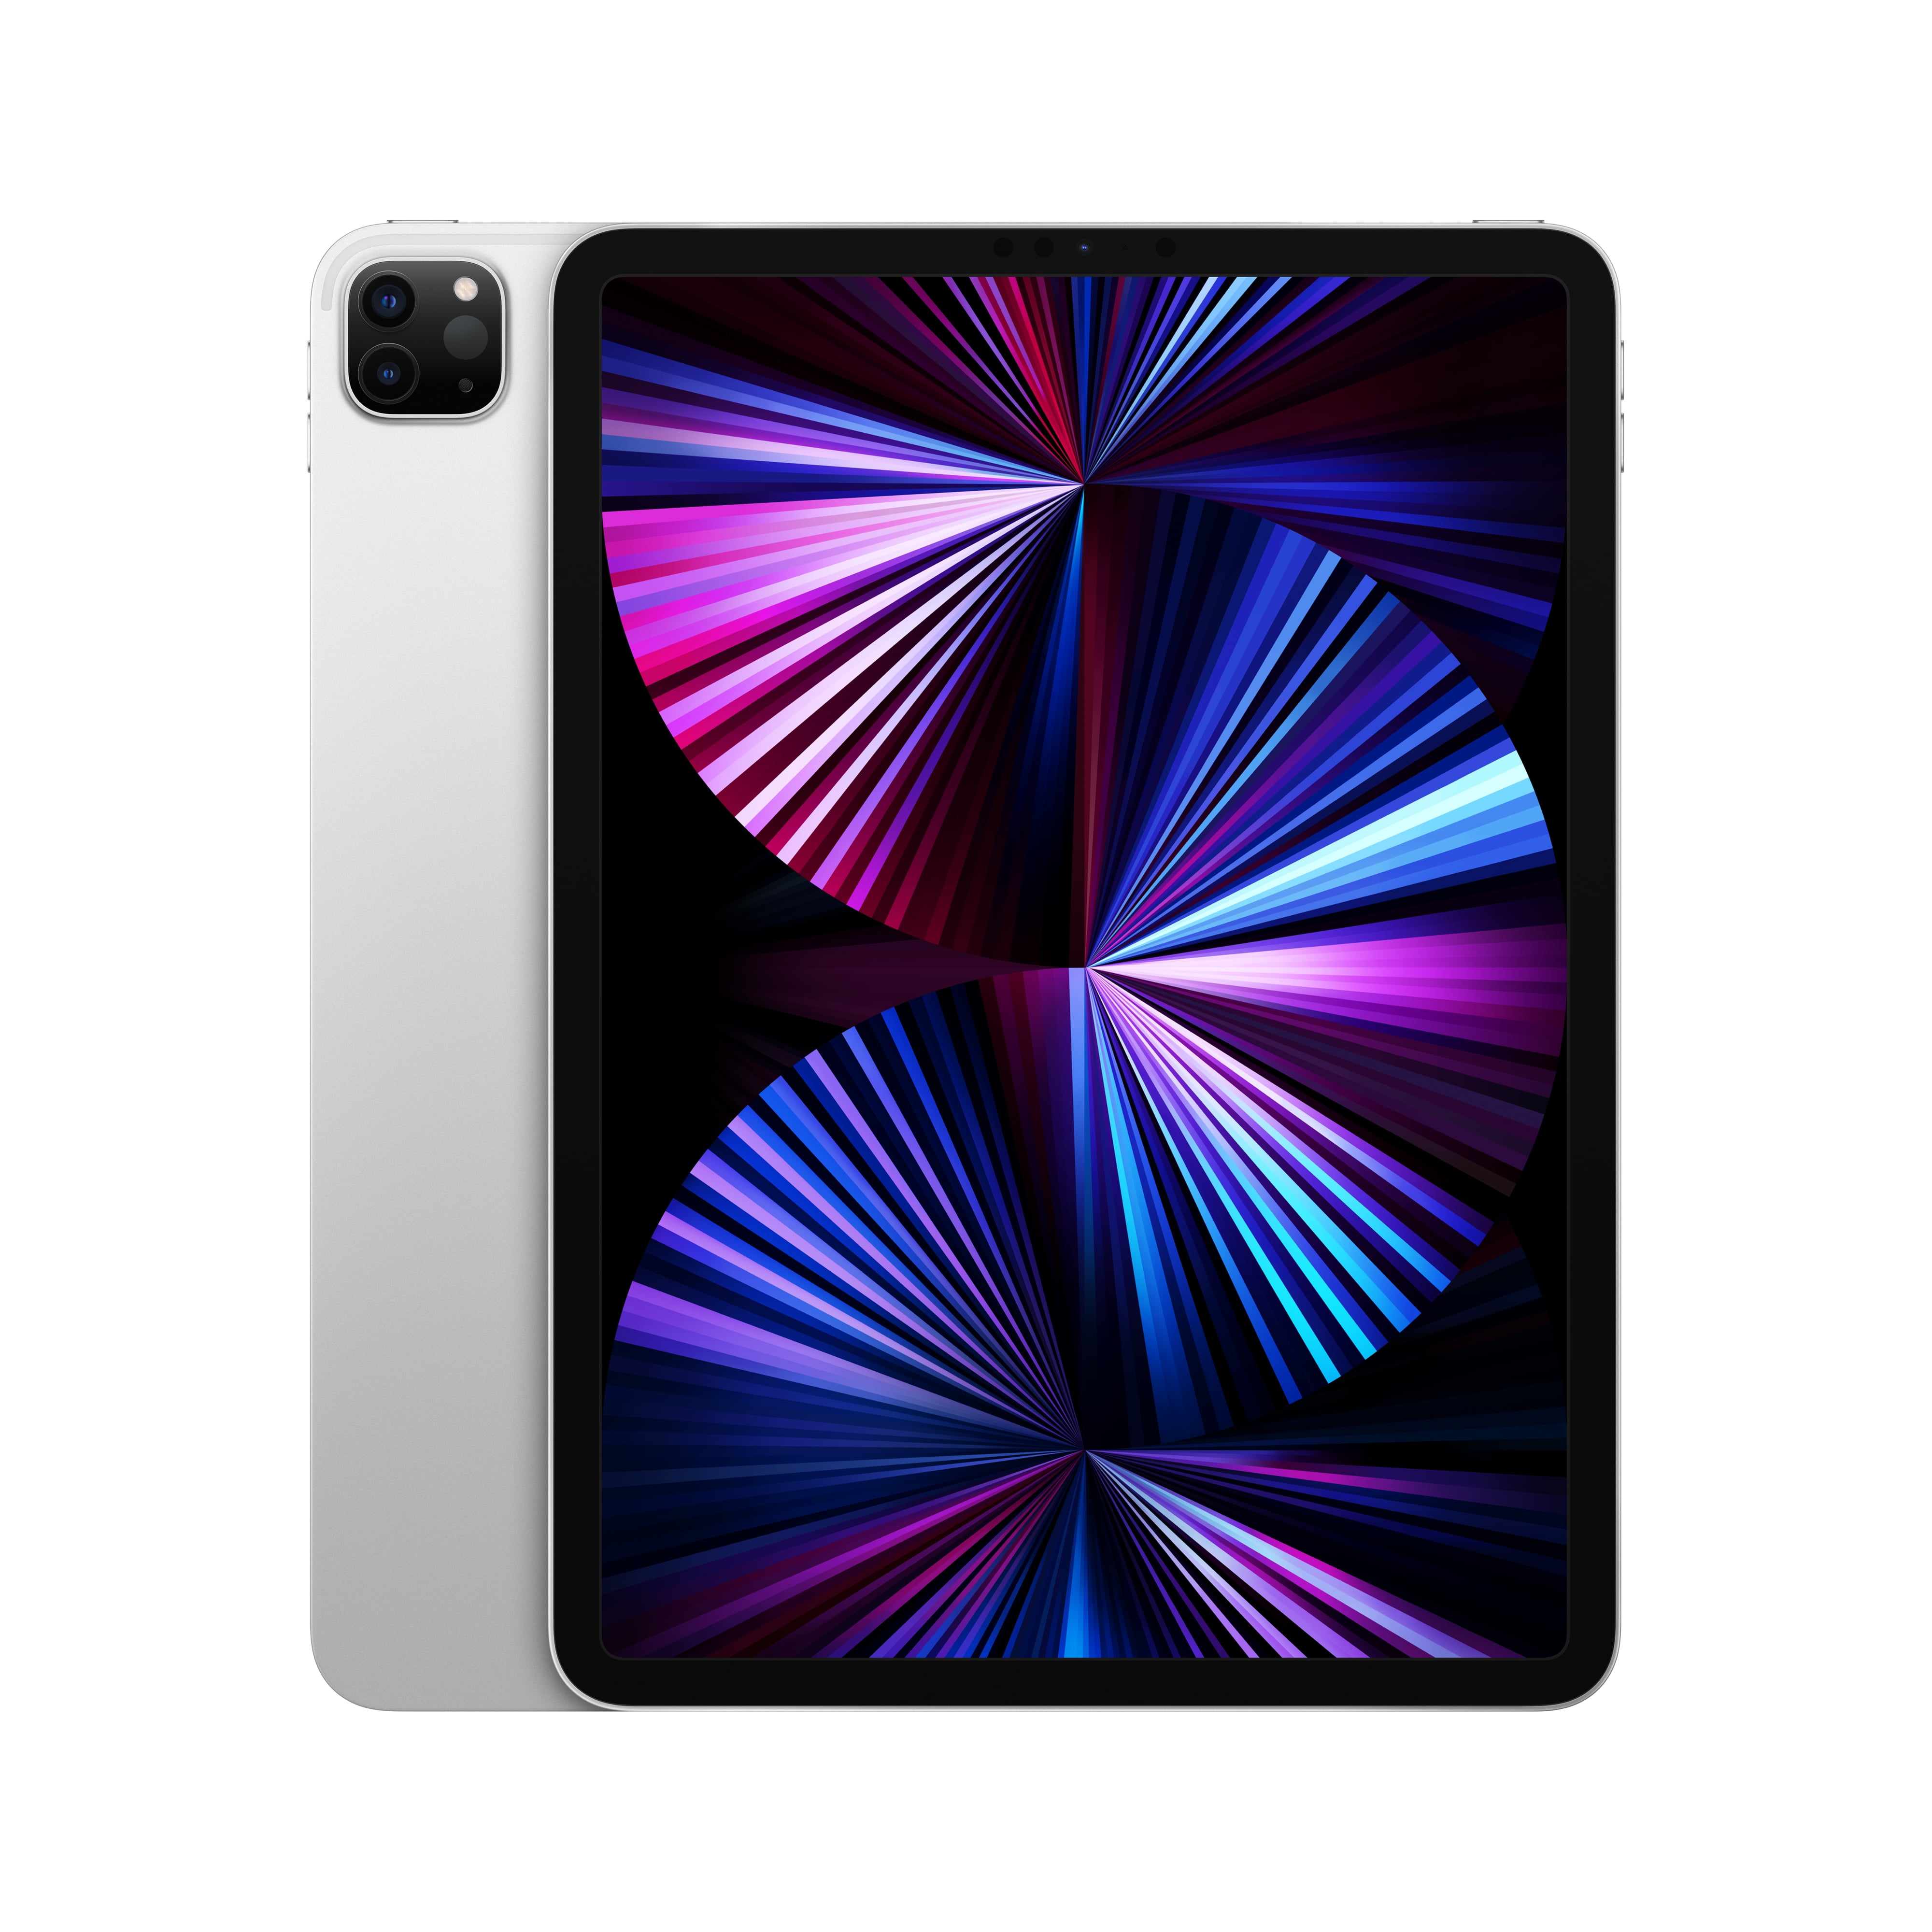 Apple 12.9-inch iPad Pro (2021) Wi-Fi 256GB - Space Gray